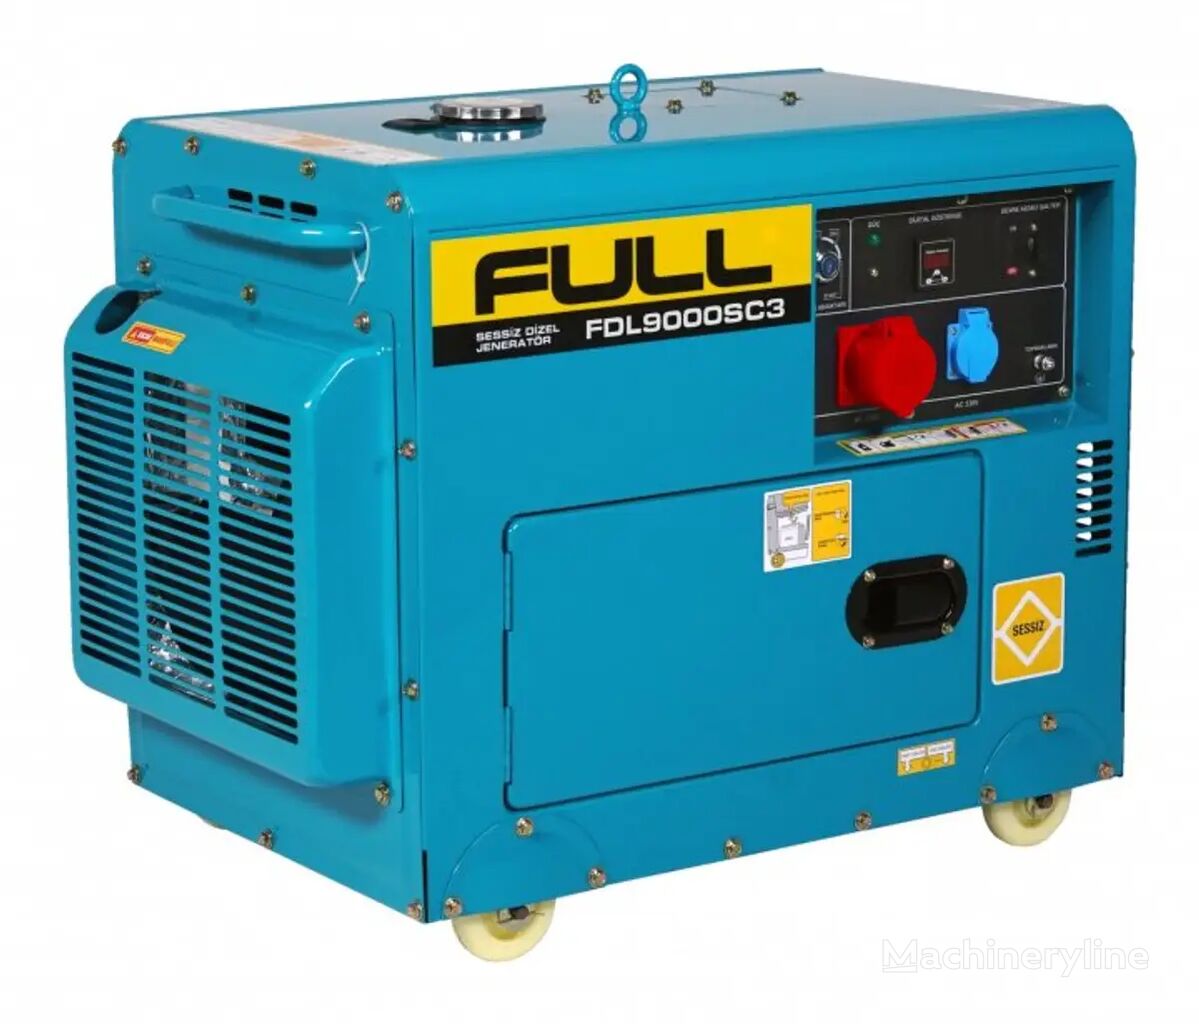 new Full  FDL-9000-SC3  diesel generator